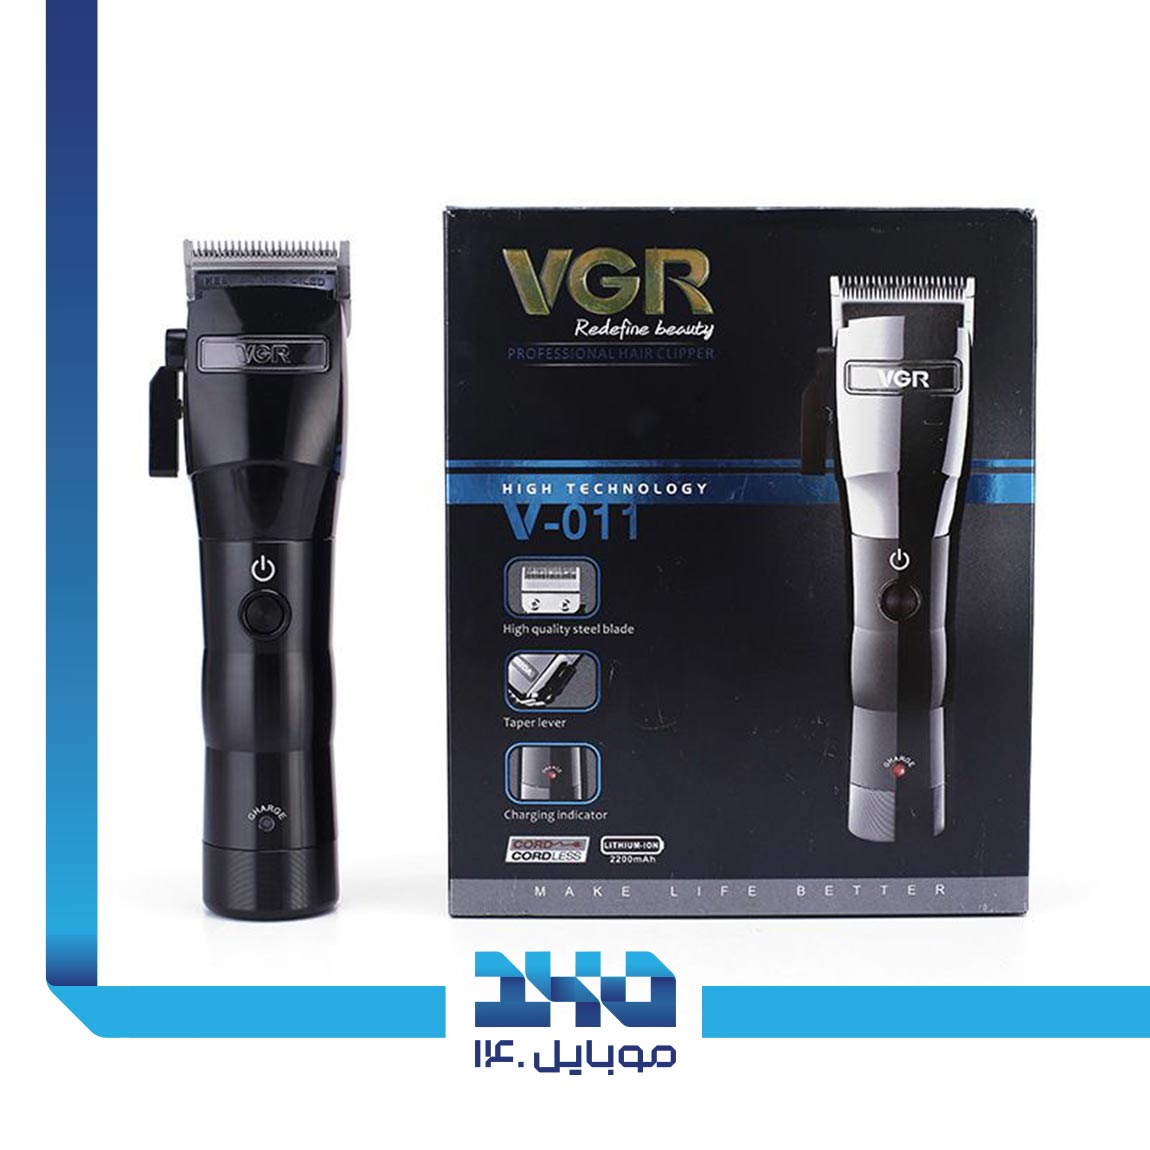 VGR V-011 Hair Trimmer 4